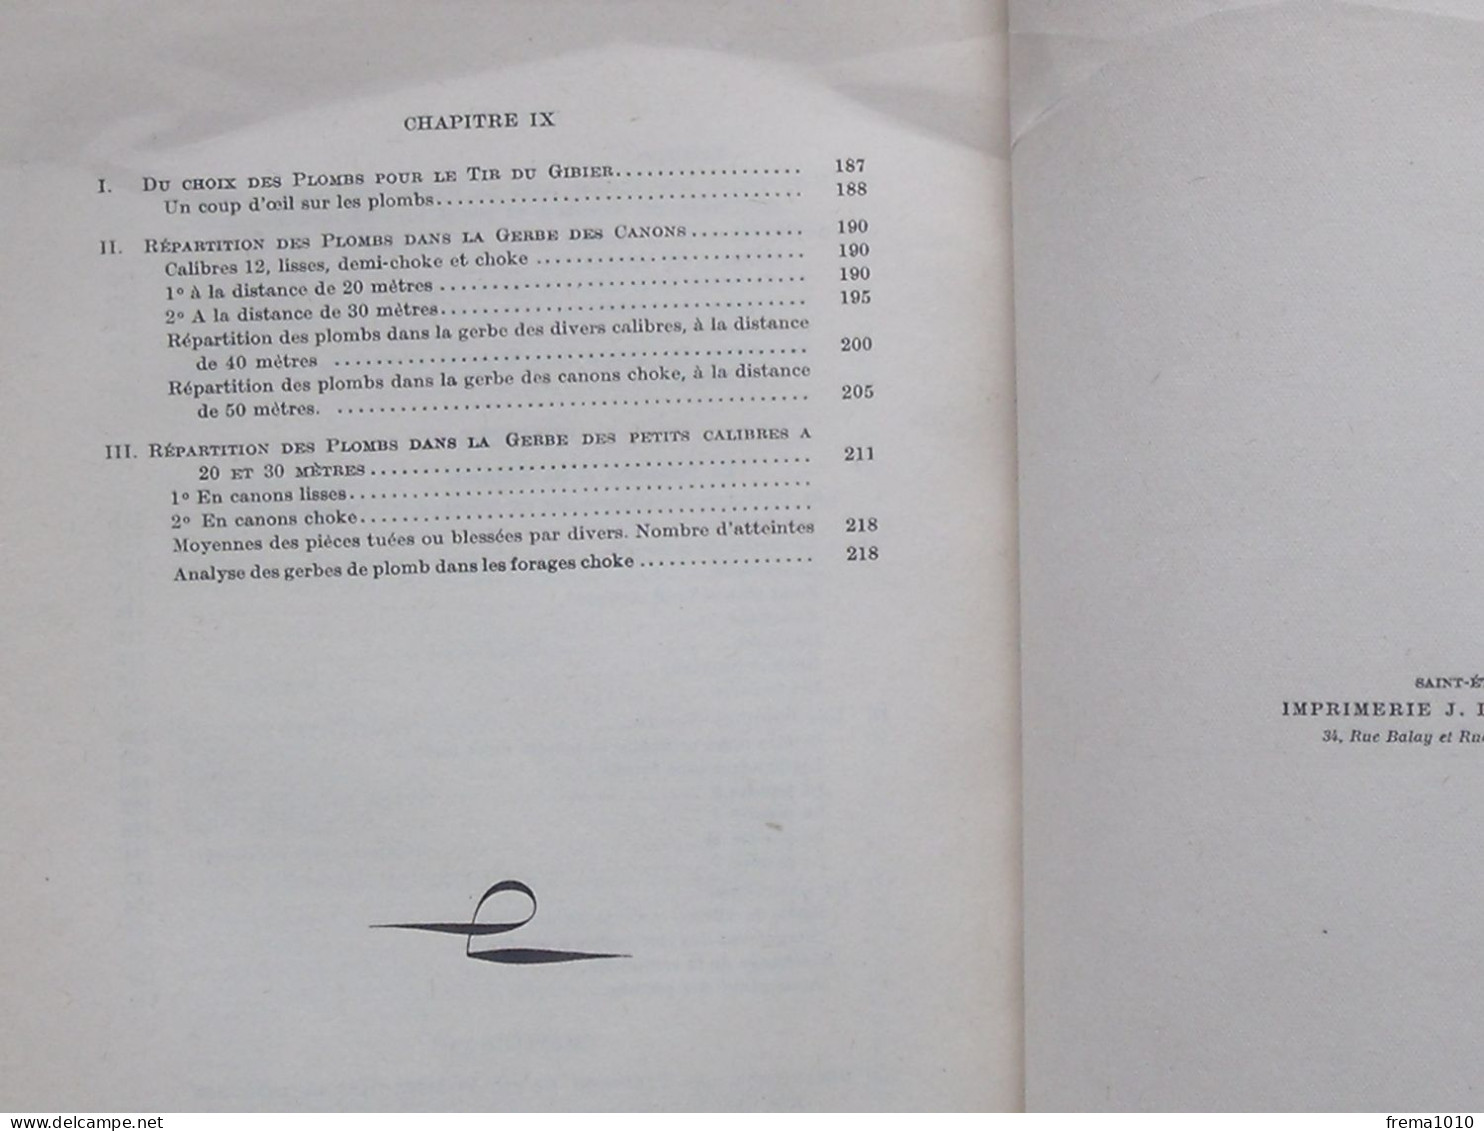 "LE TIR ET LA PORTEE DES FUSILS DE CHASSE" Livre de 1932 de SOUCHET - Imp. HENAFF à SAINT-ETIENNE